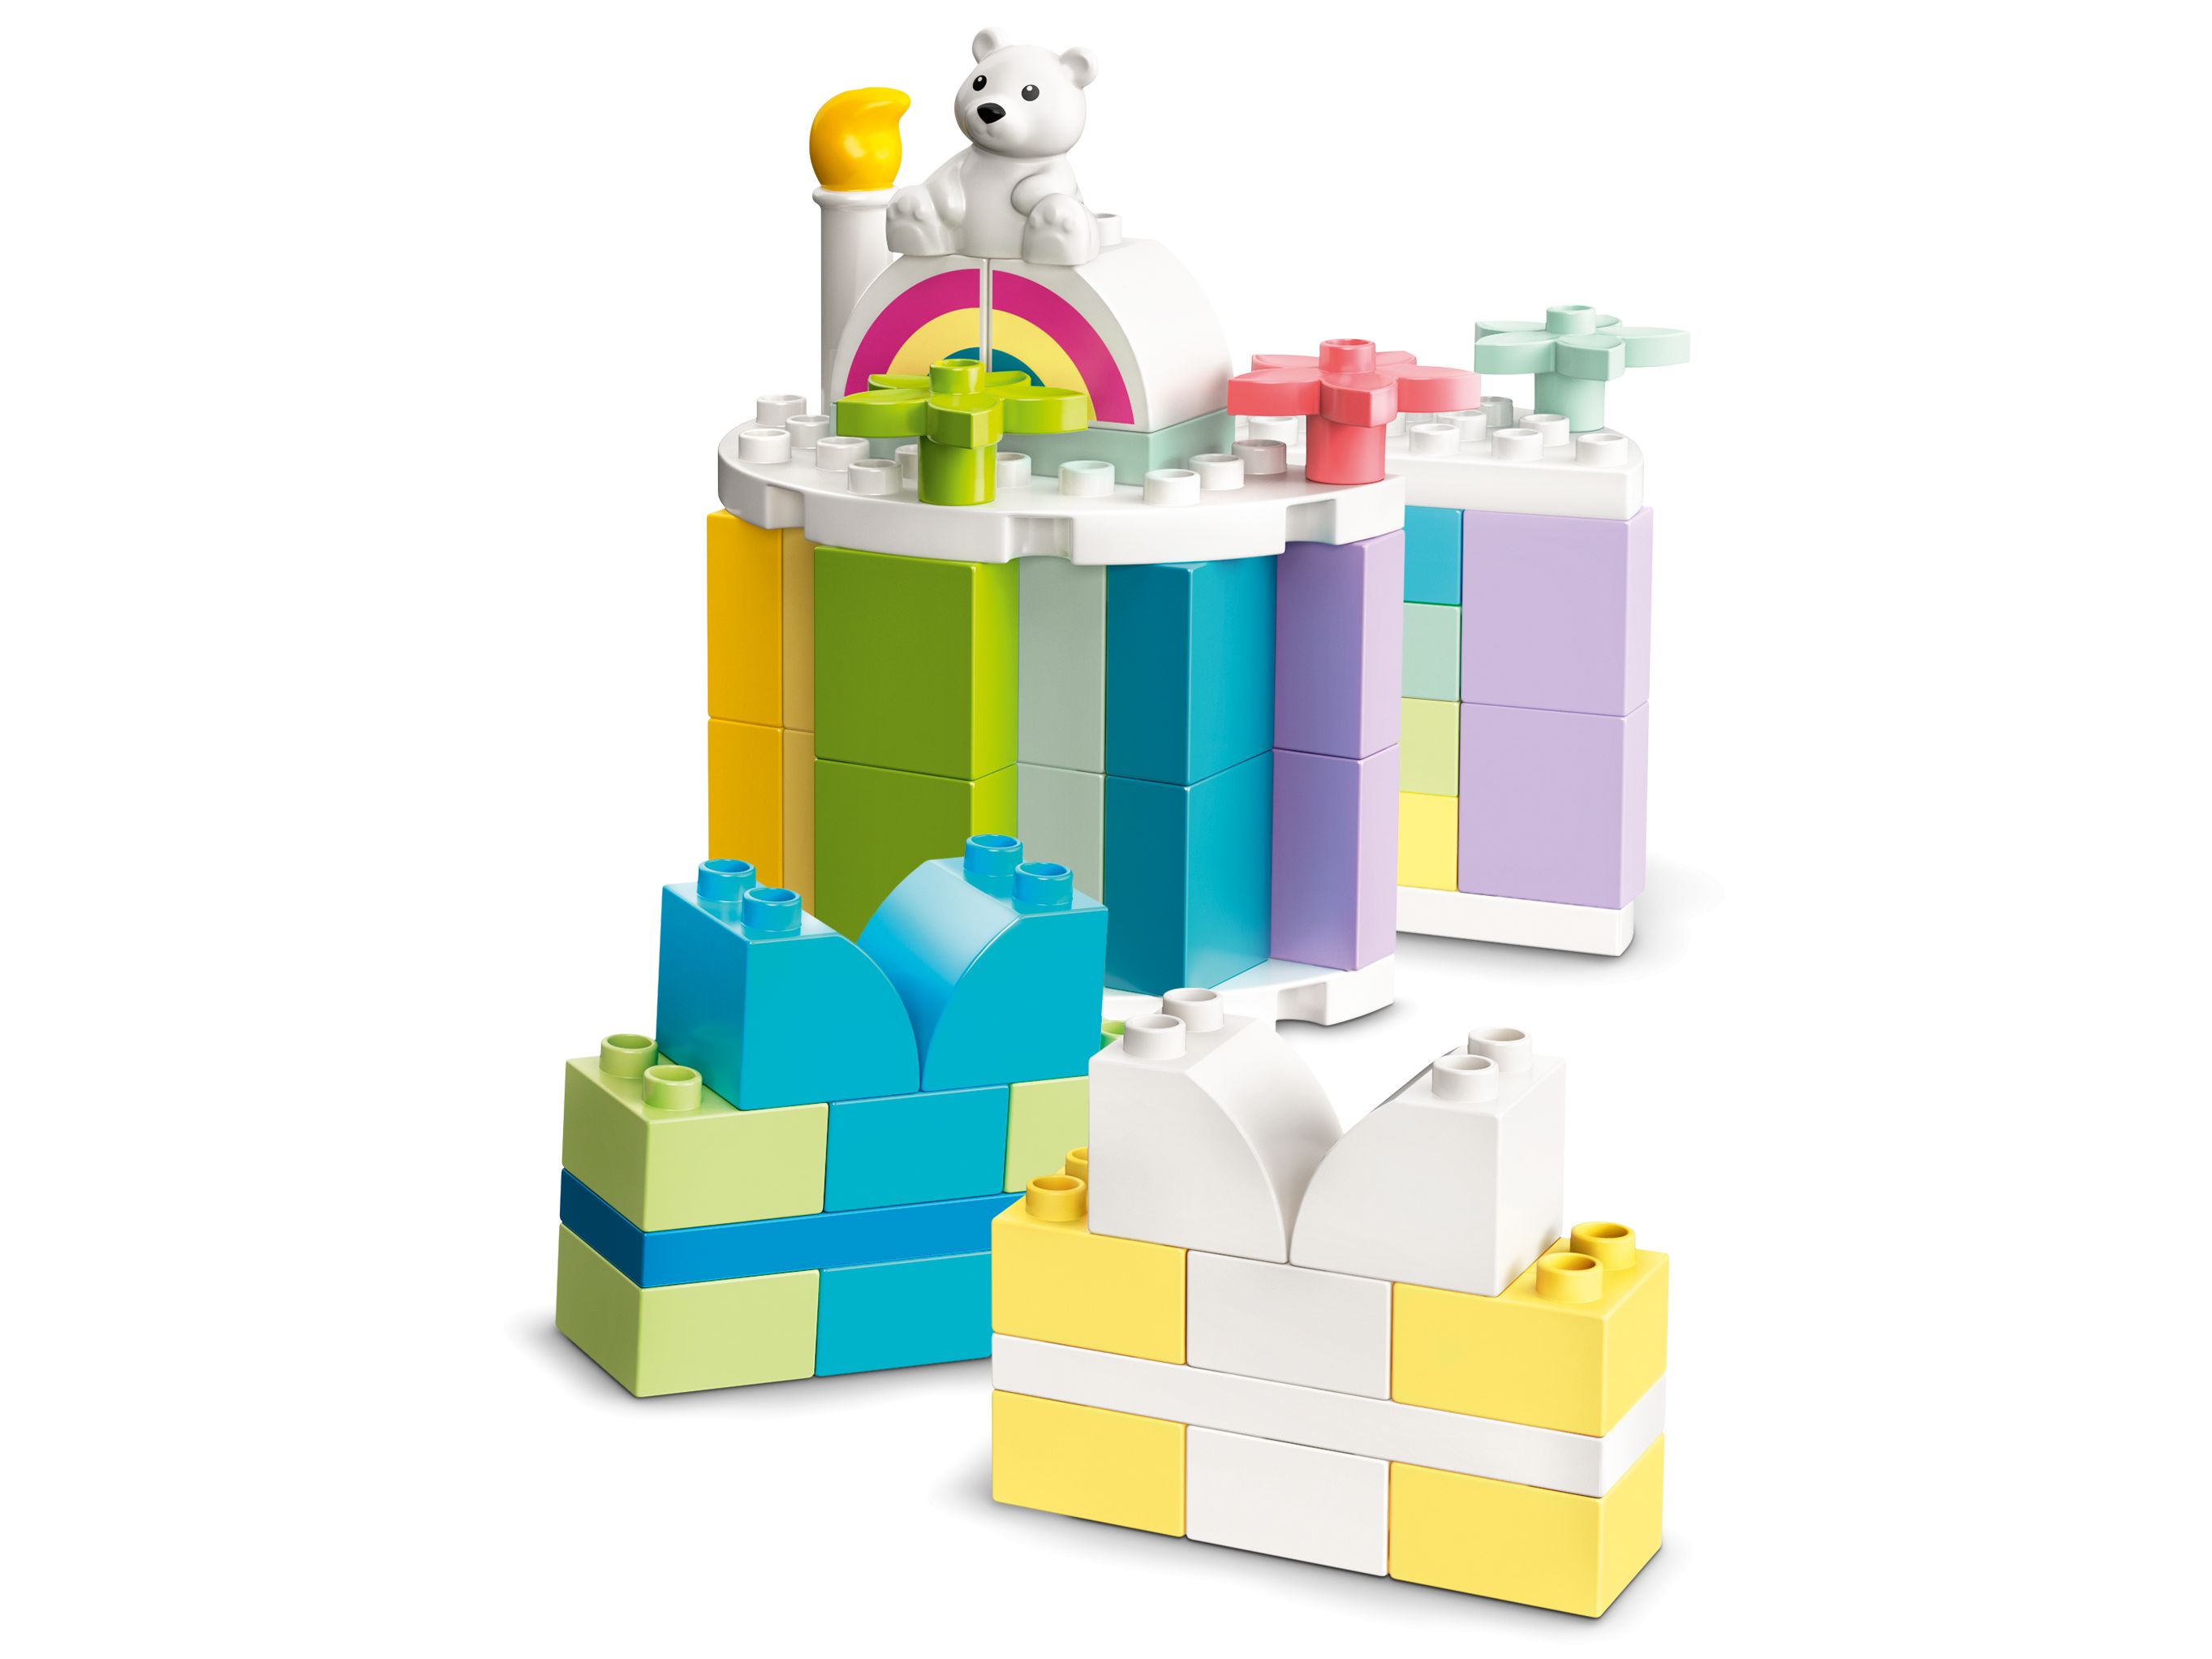 LEGO Duplo 10958 Kreative Geburtstagsparty LEGO_10958_alt4.jpg